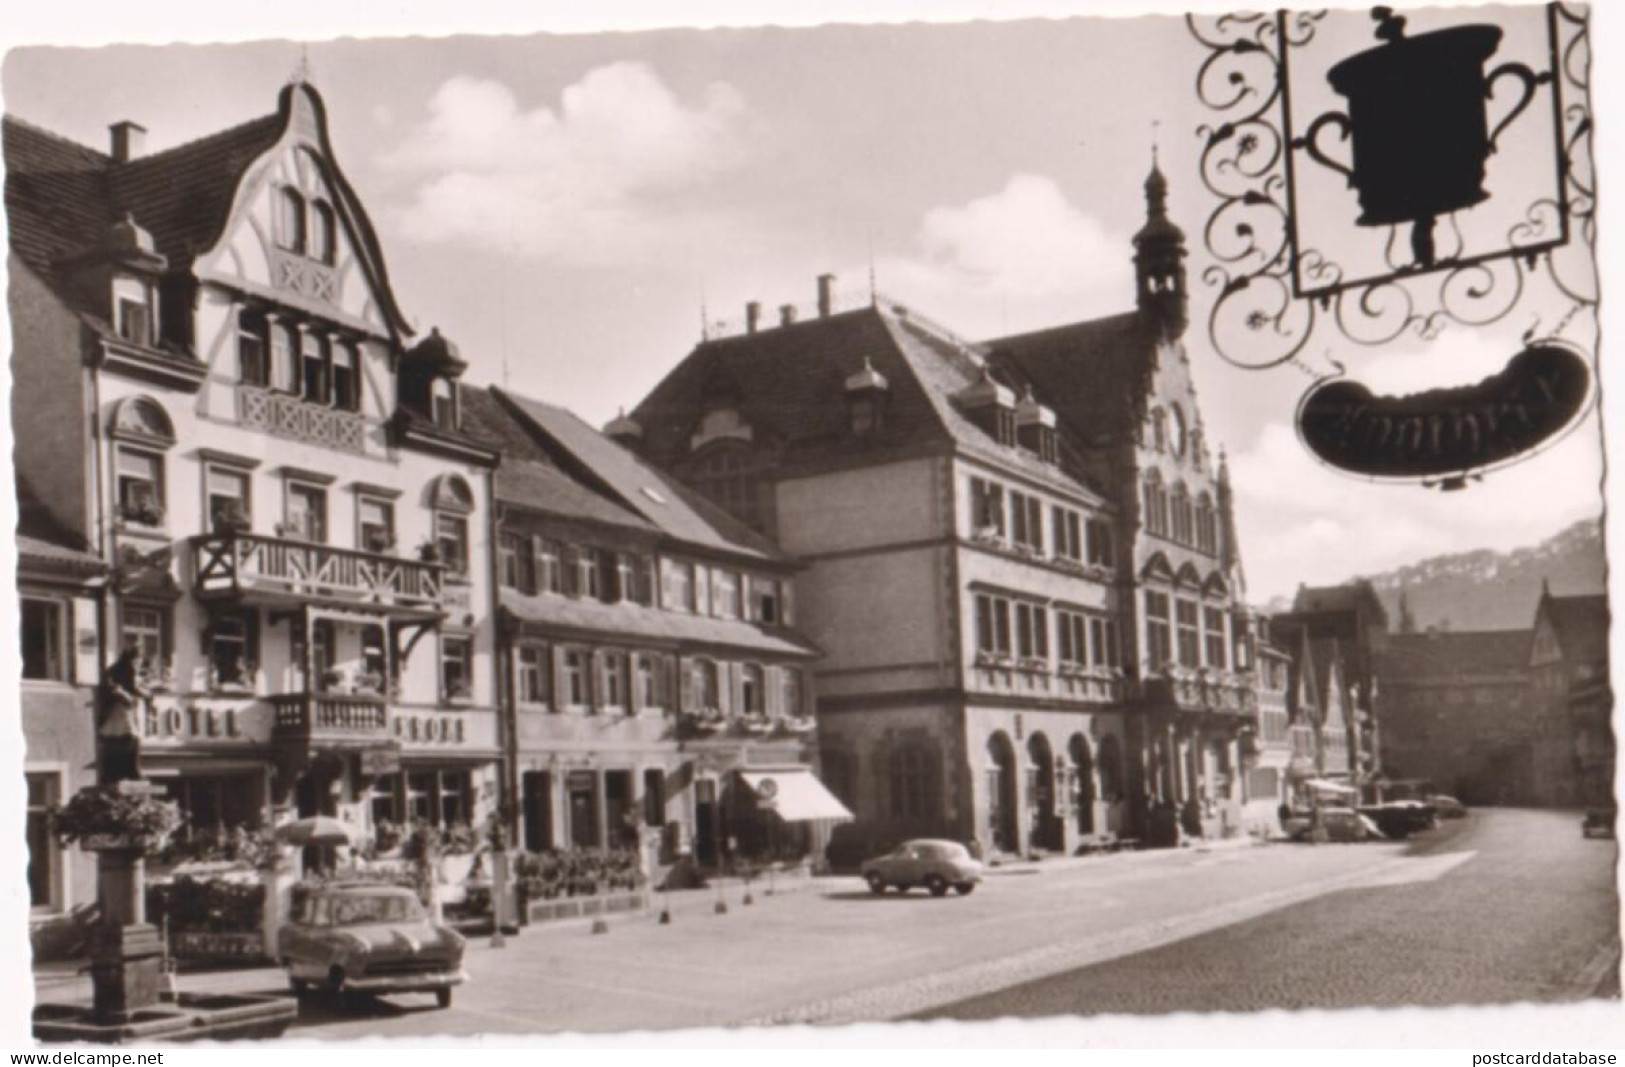 Wolfach - Hauptstrasse - & Old Cars - Wolfach